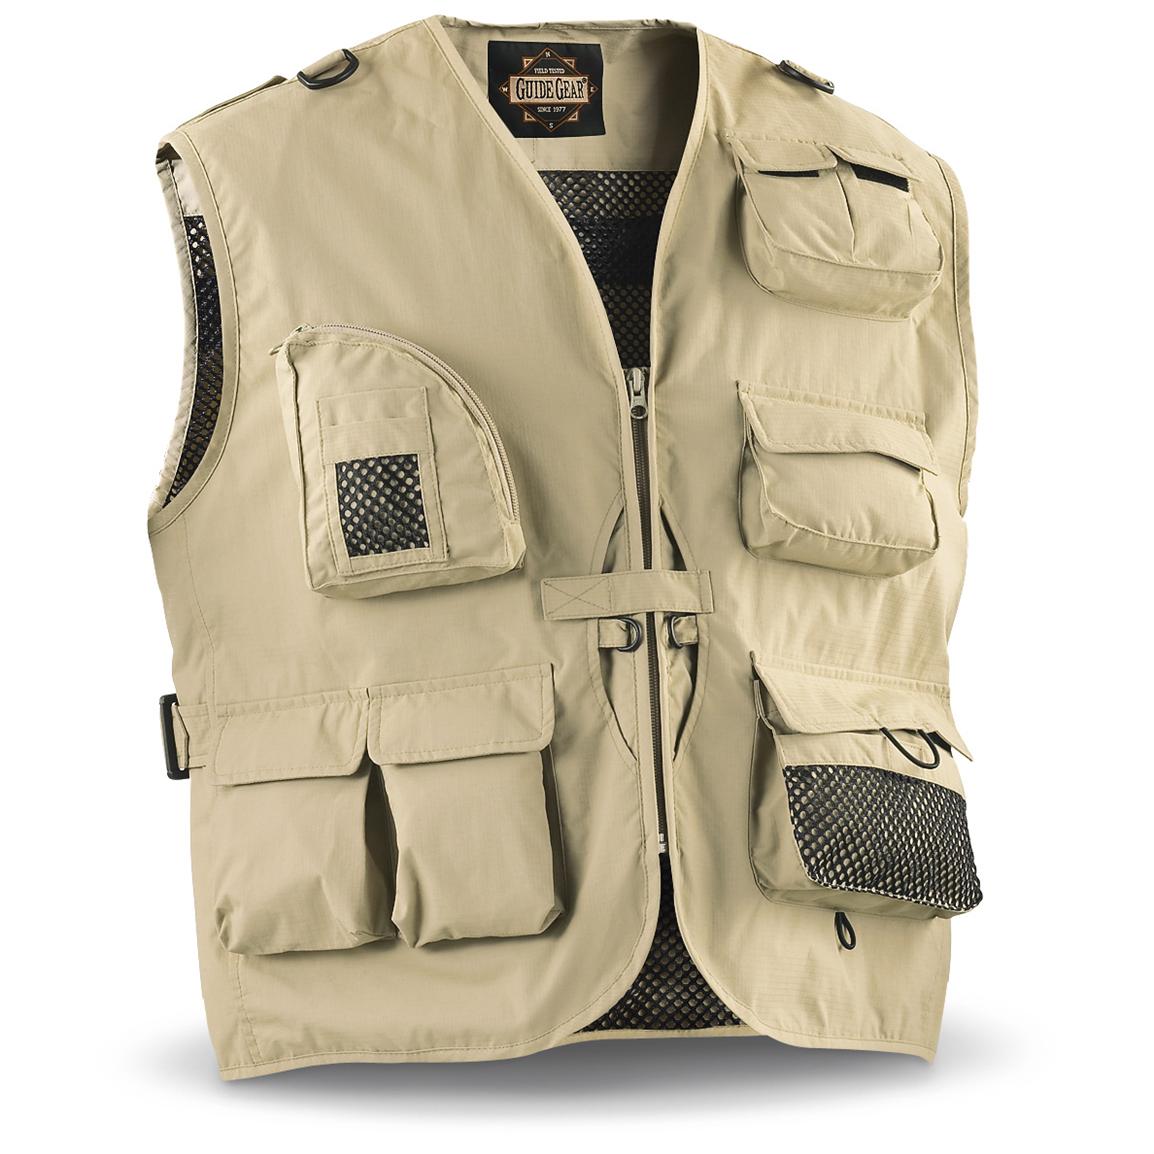 Guide Gear® Outdoorsman Vest, Khaki - 131244, Vests at Sportsman's Guide